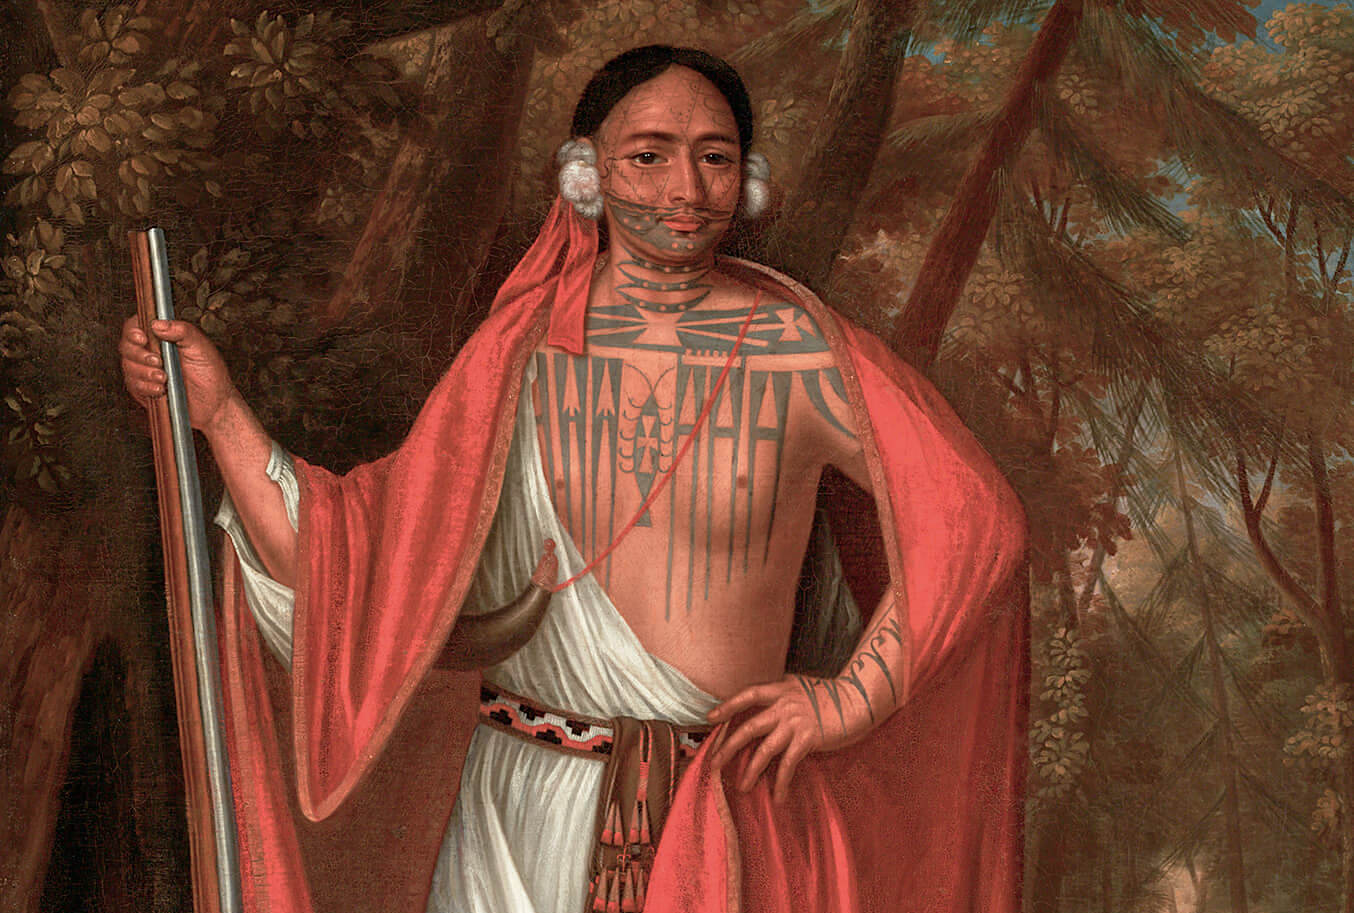 Племенные тату американских индейцев | Источник: mavink.com